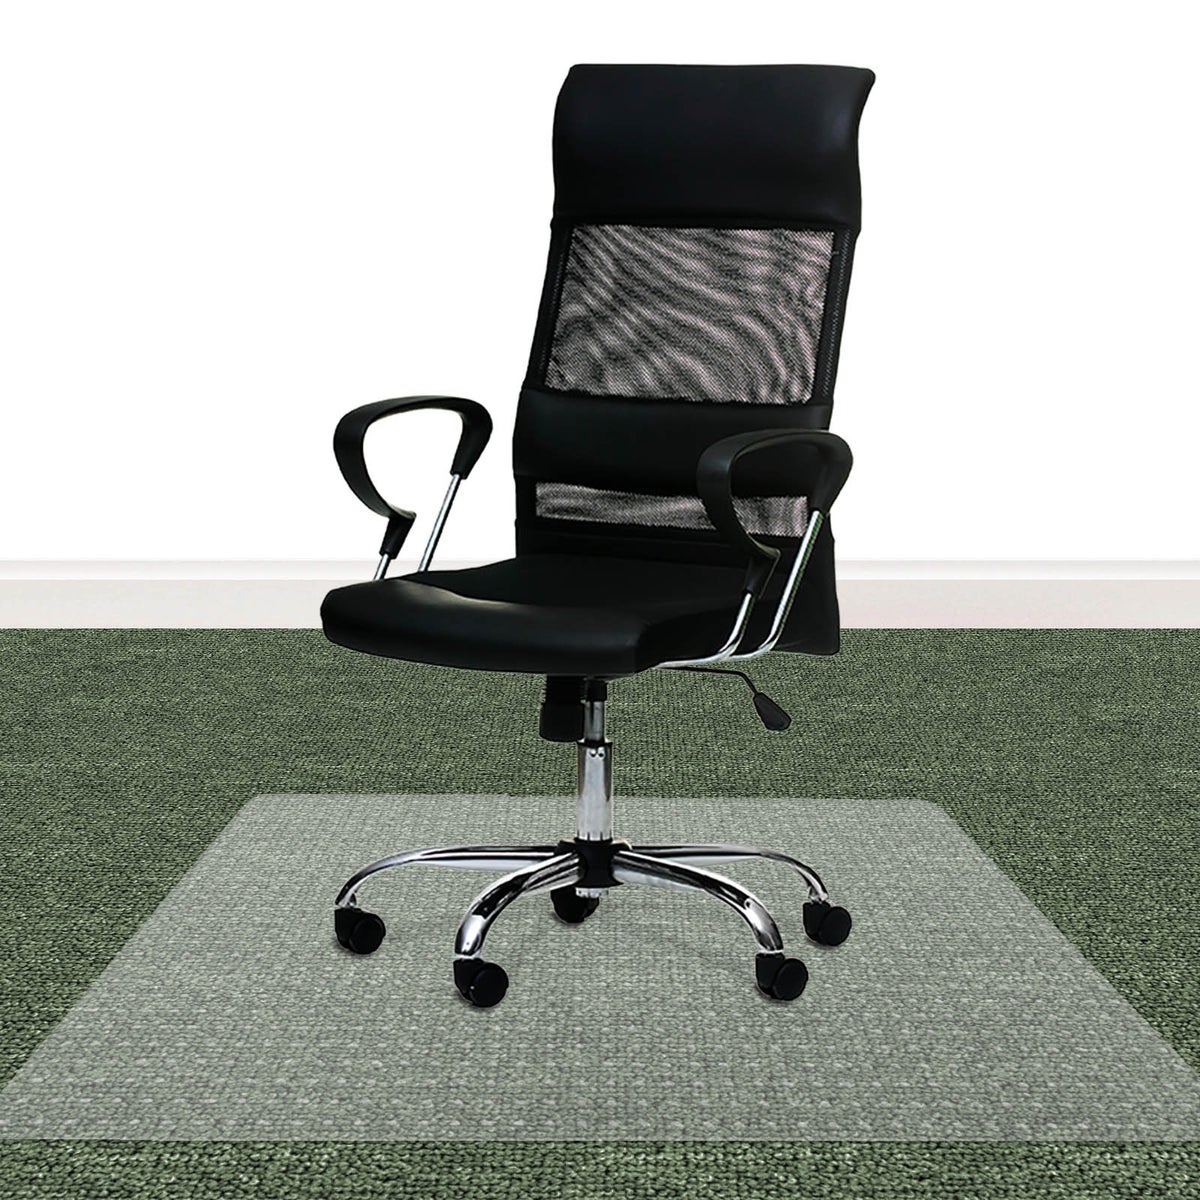 Bodenschutzmatte PET ECO-MAT - 116x120 cm - Teppichboden - Schutzmatte mit Ankernoppen auf der Unterseite als Unterlage für Bürostuhl